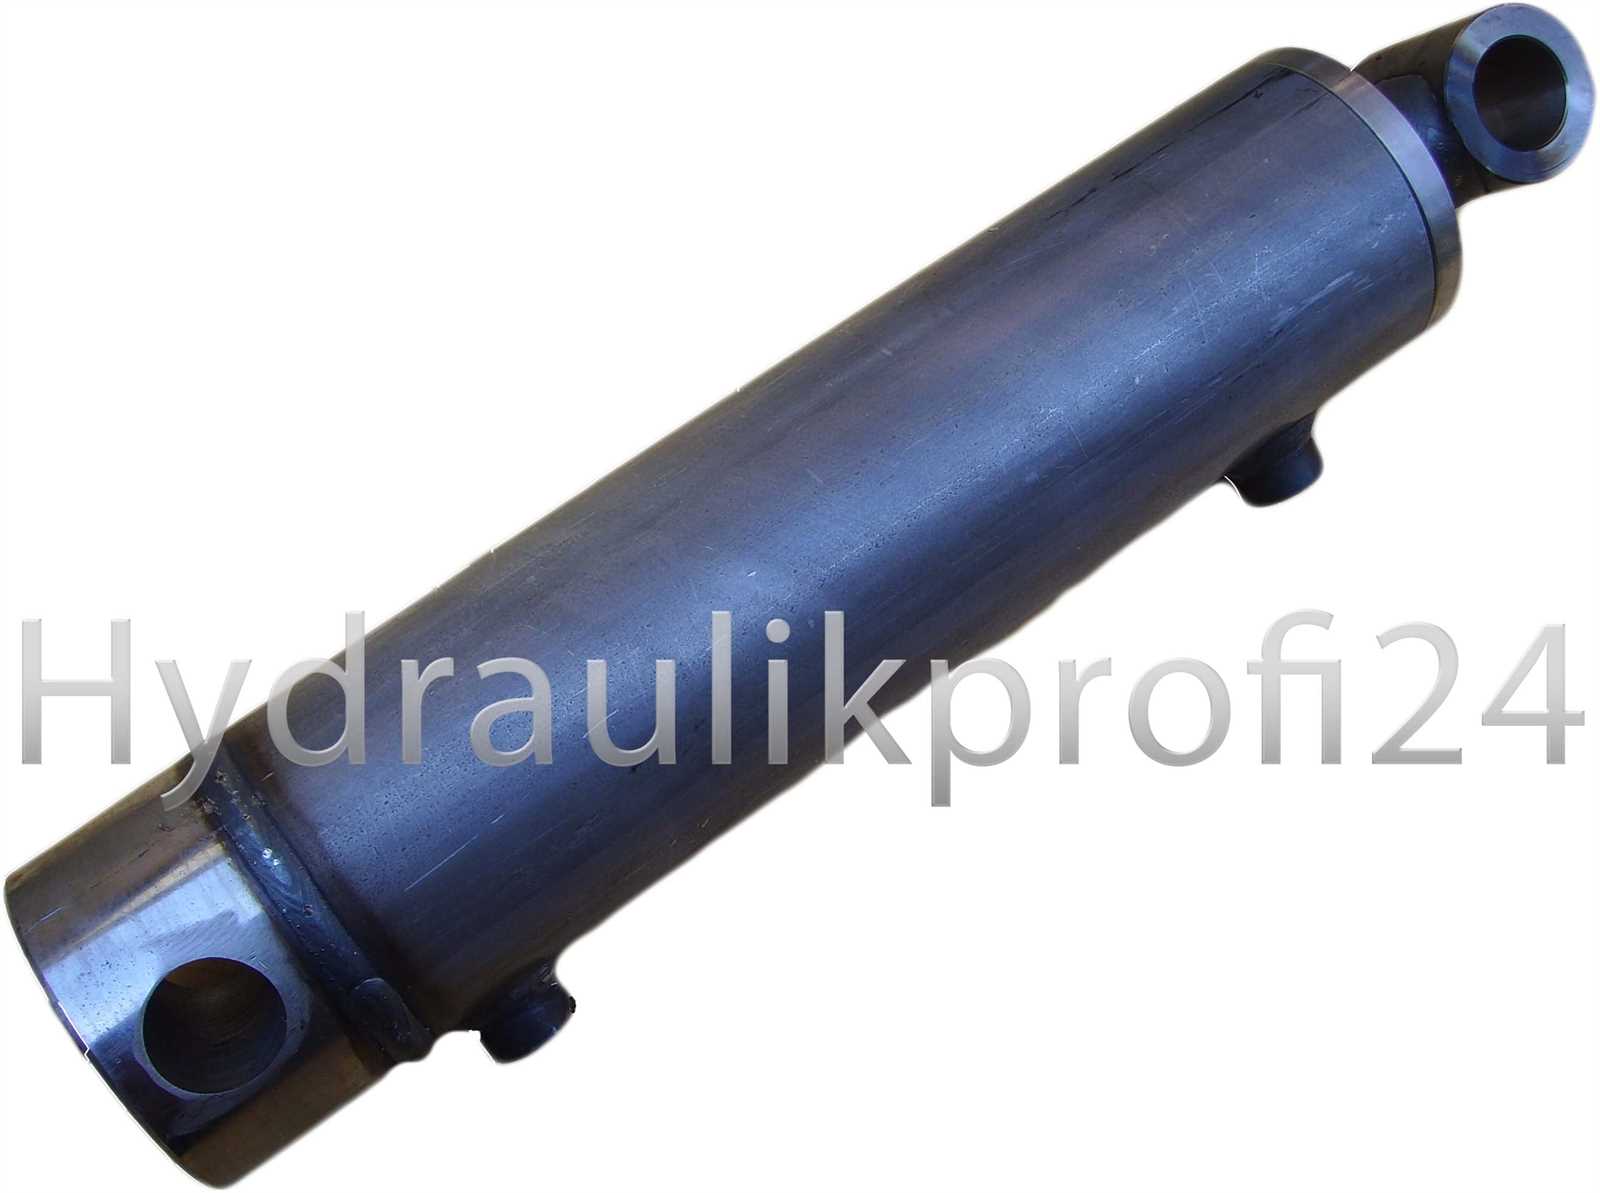 Hydraulikprofi24 - Hydraulikzylinder doppeltwirkend mit Befestigung  Kolbenstange Ø30mm Kolben Ø50mm